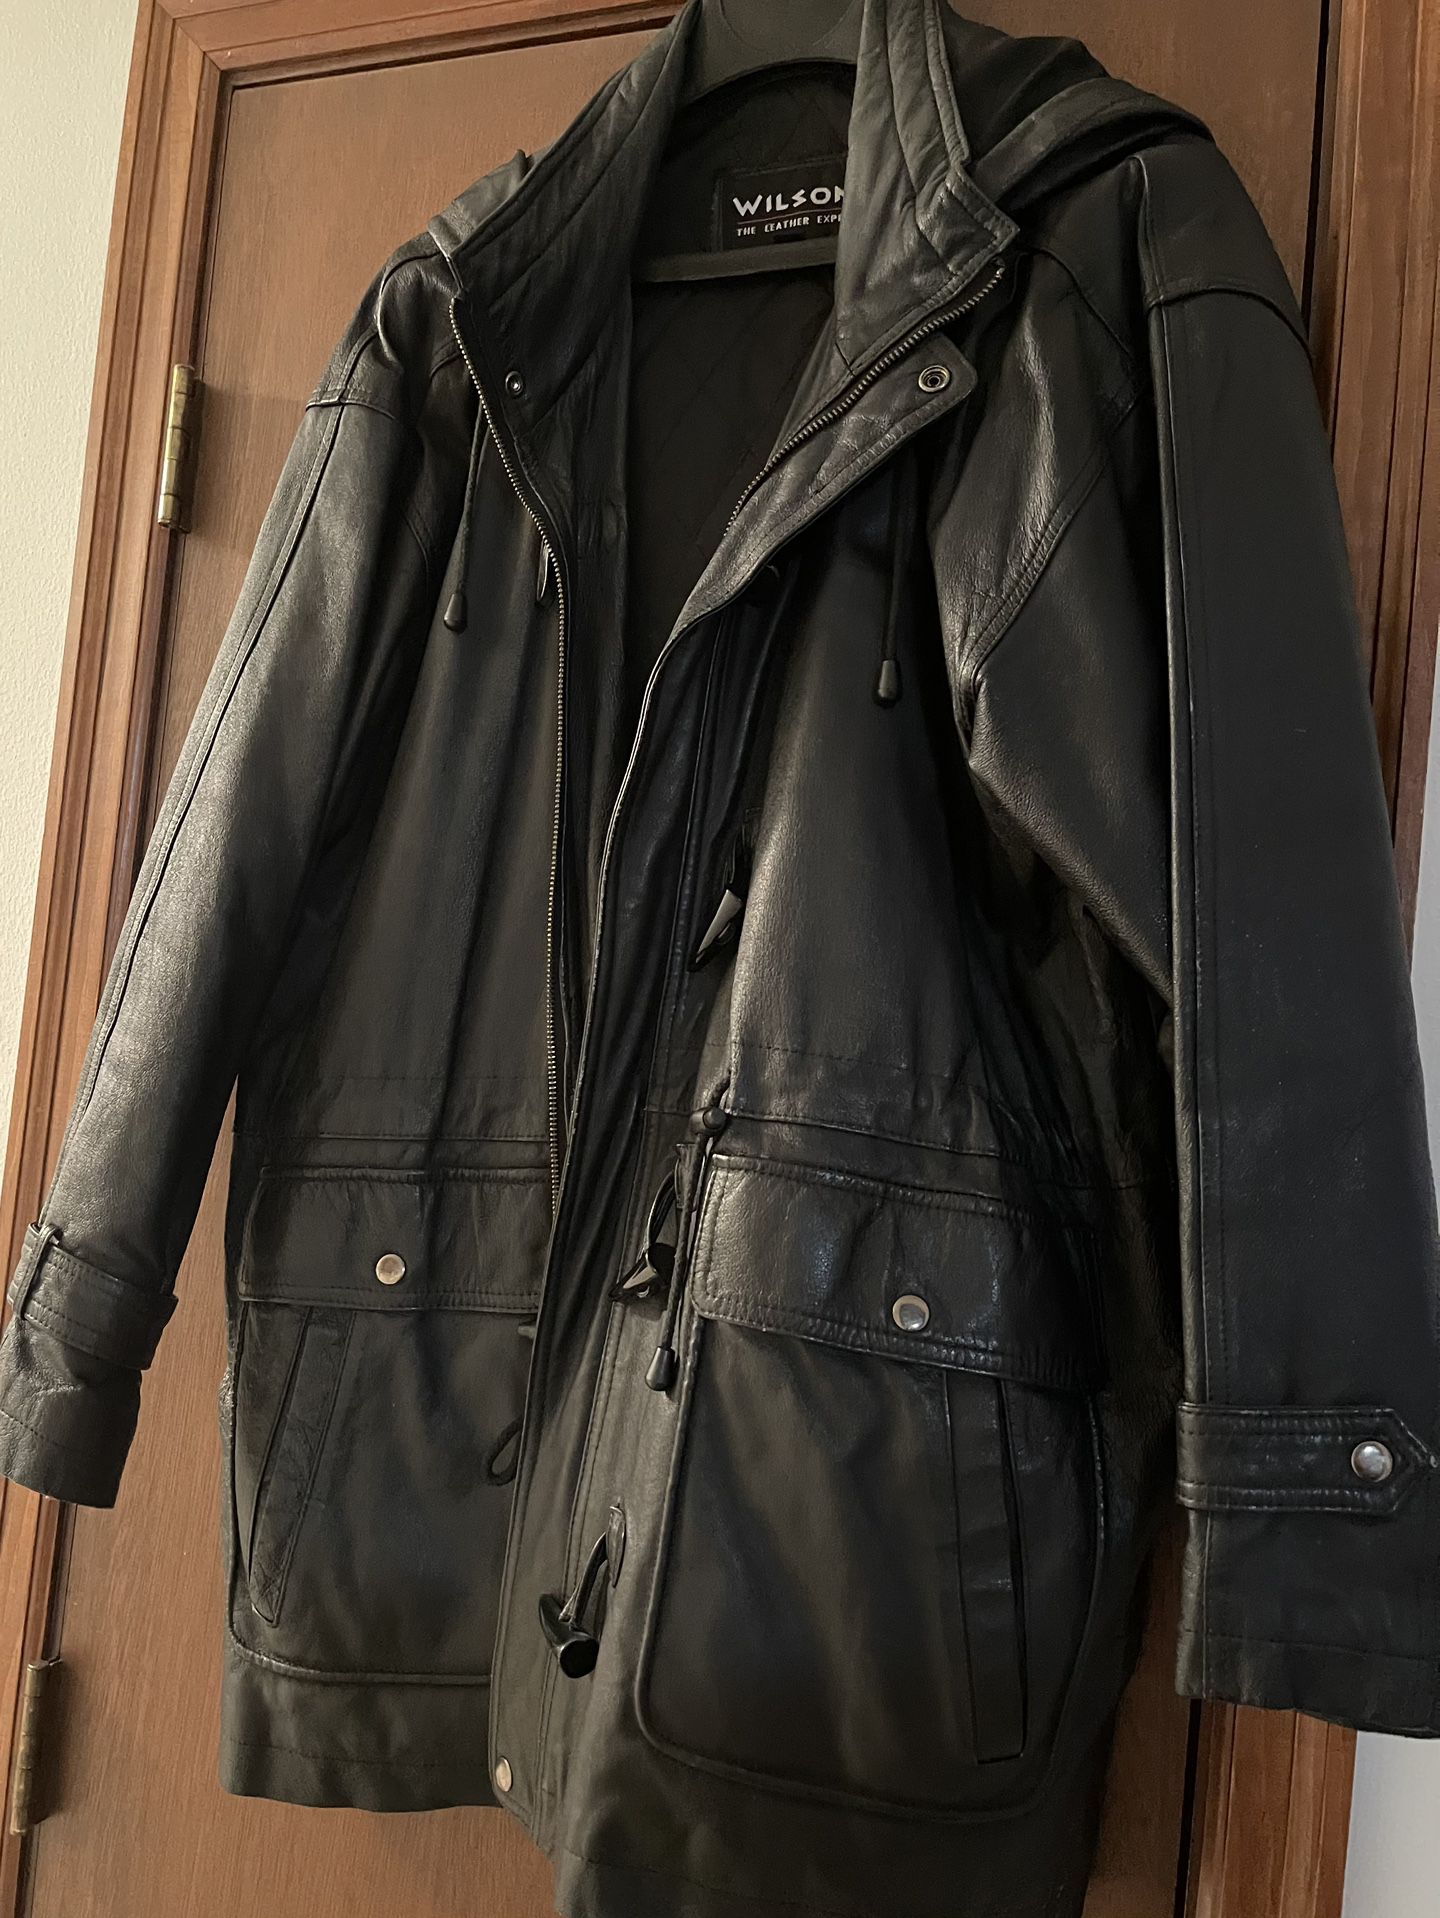 Leather Coat- Wilson 